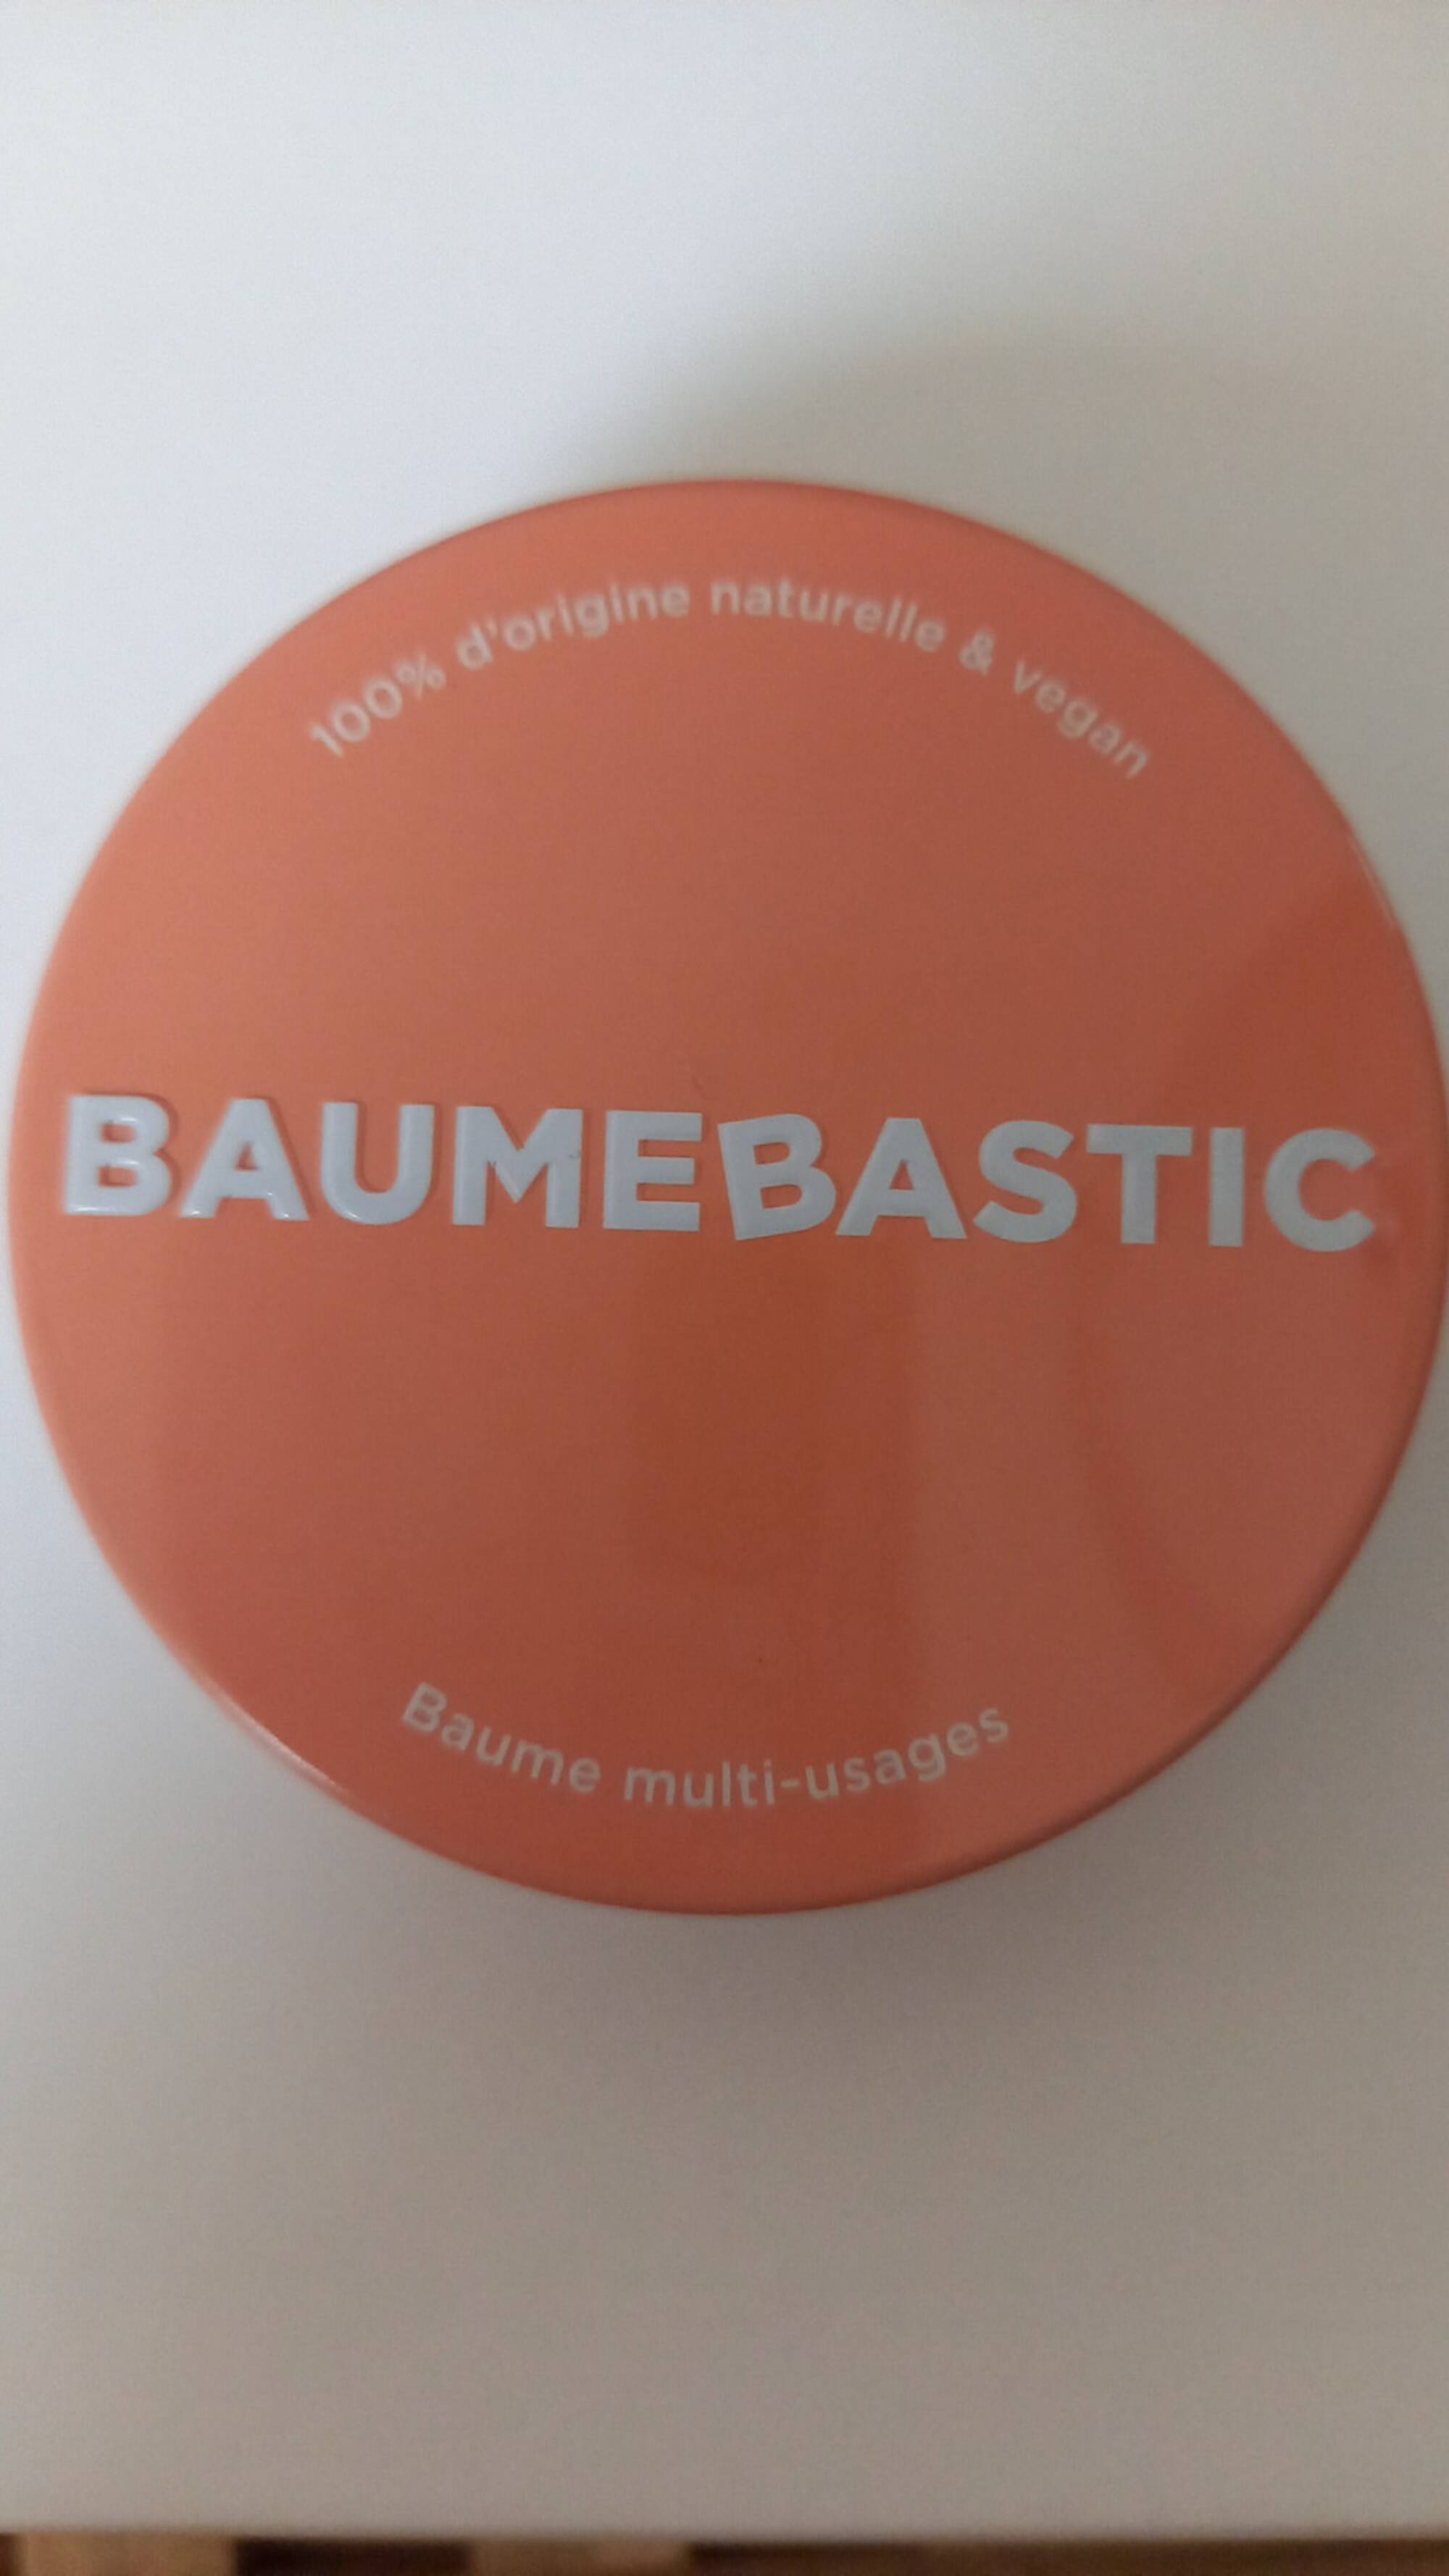 BAUMEBASTIC - Baume multi-usages